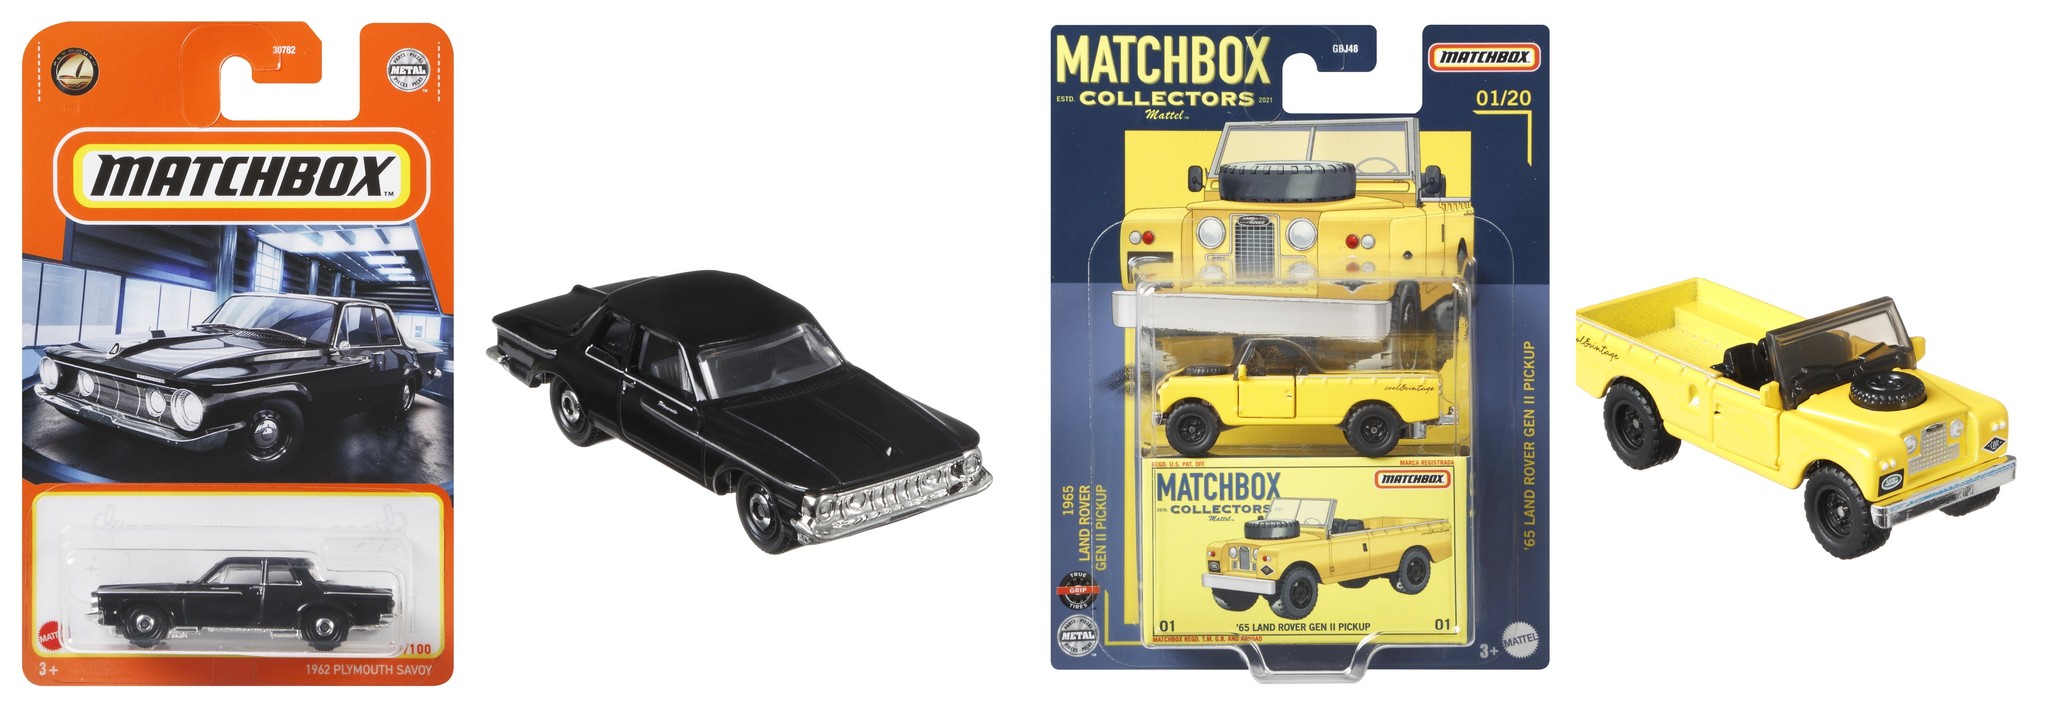 マッチボックス(Matchbox) コレクターズ アソートミニカー8台入り BOX